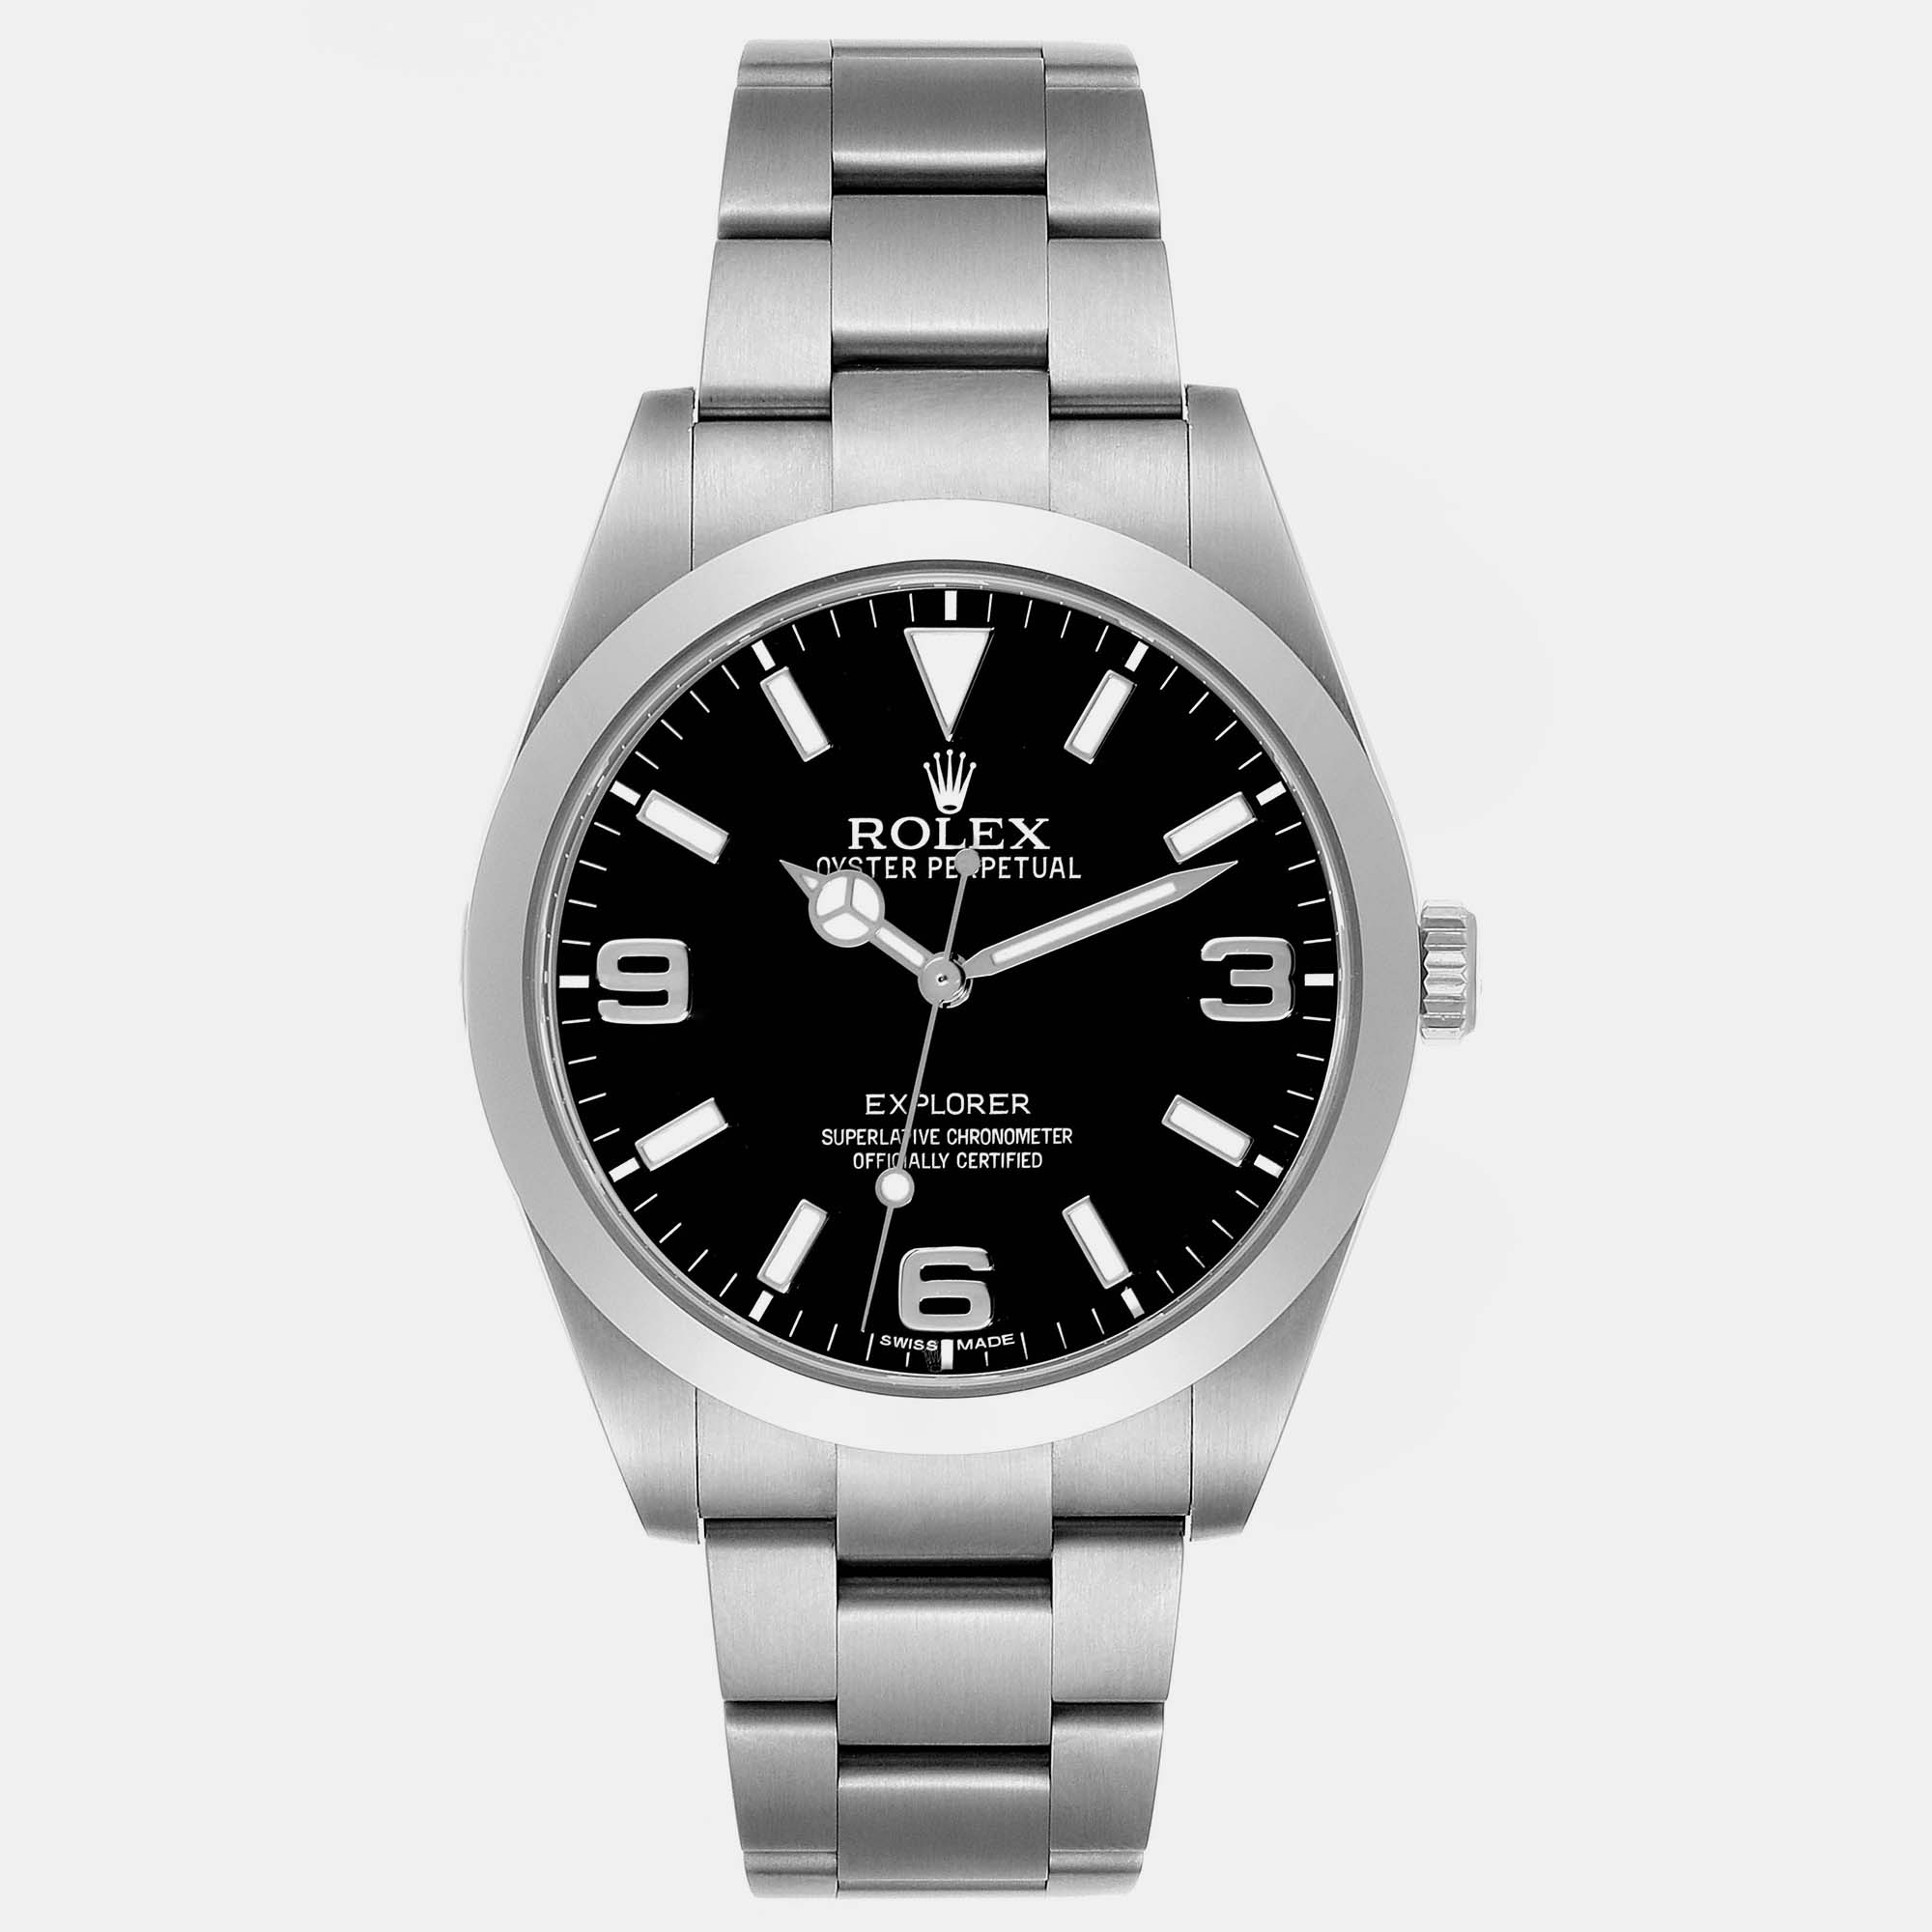 Rolex explorer i black dial steel men's watch 39 mm